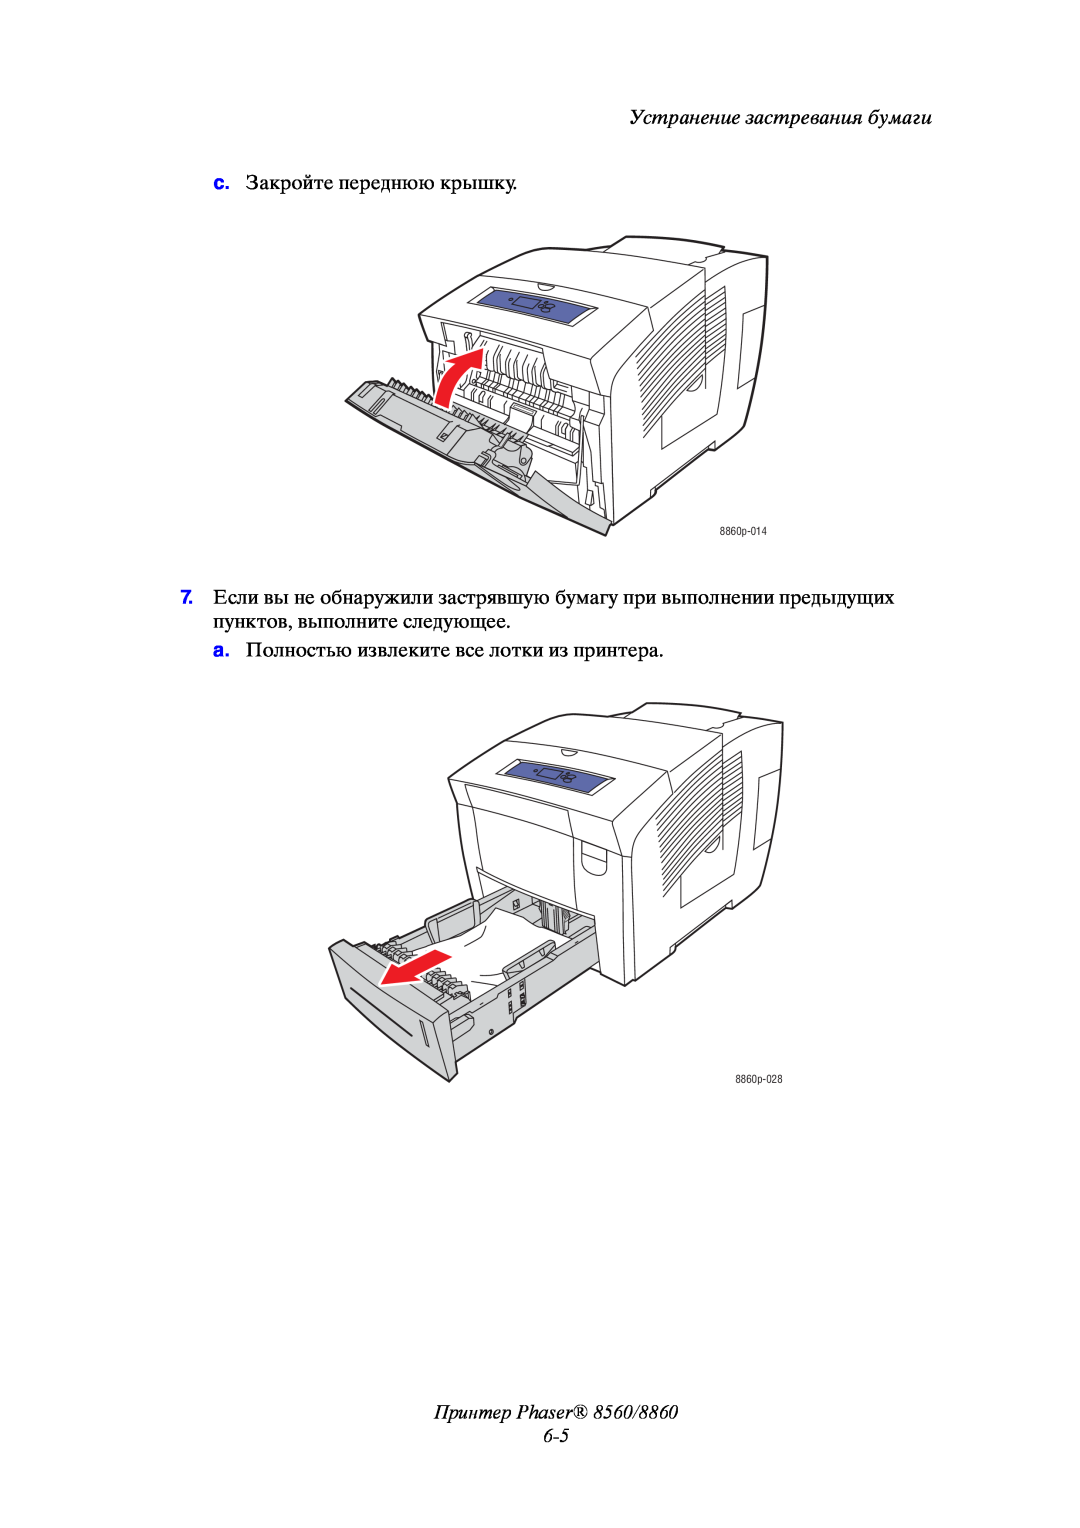 Xerox Принтер Phaser 8560/8860 6-5, Устранение застревания бумаги, c. Закройте переднюю крышку, 8860p-014, 8860p-028 